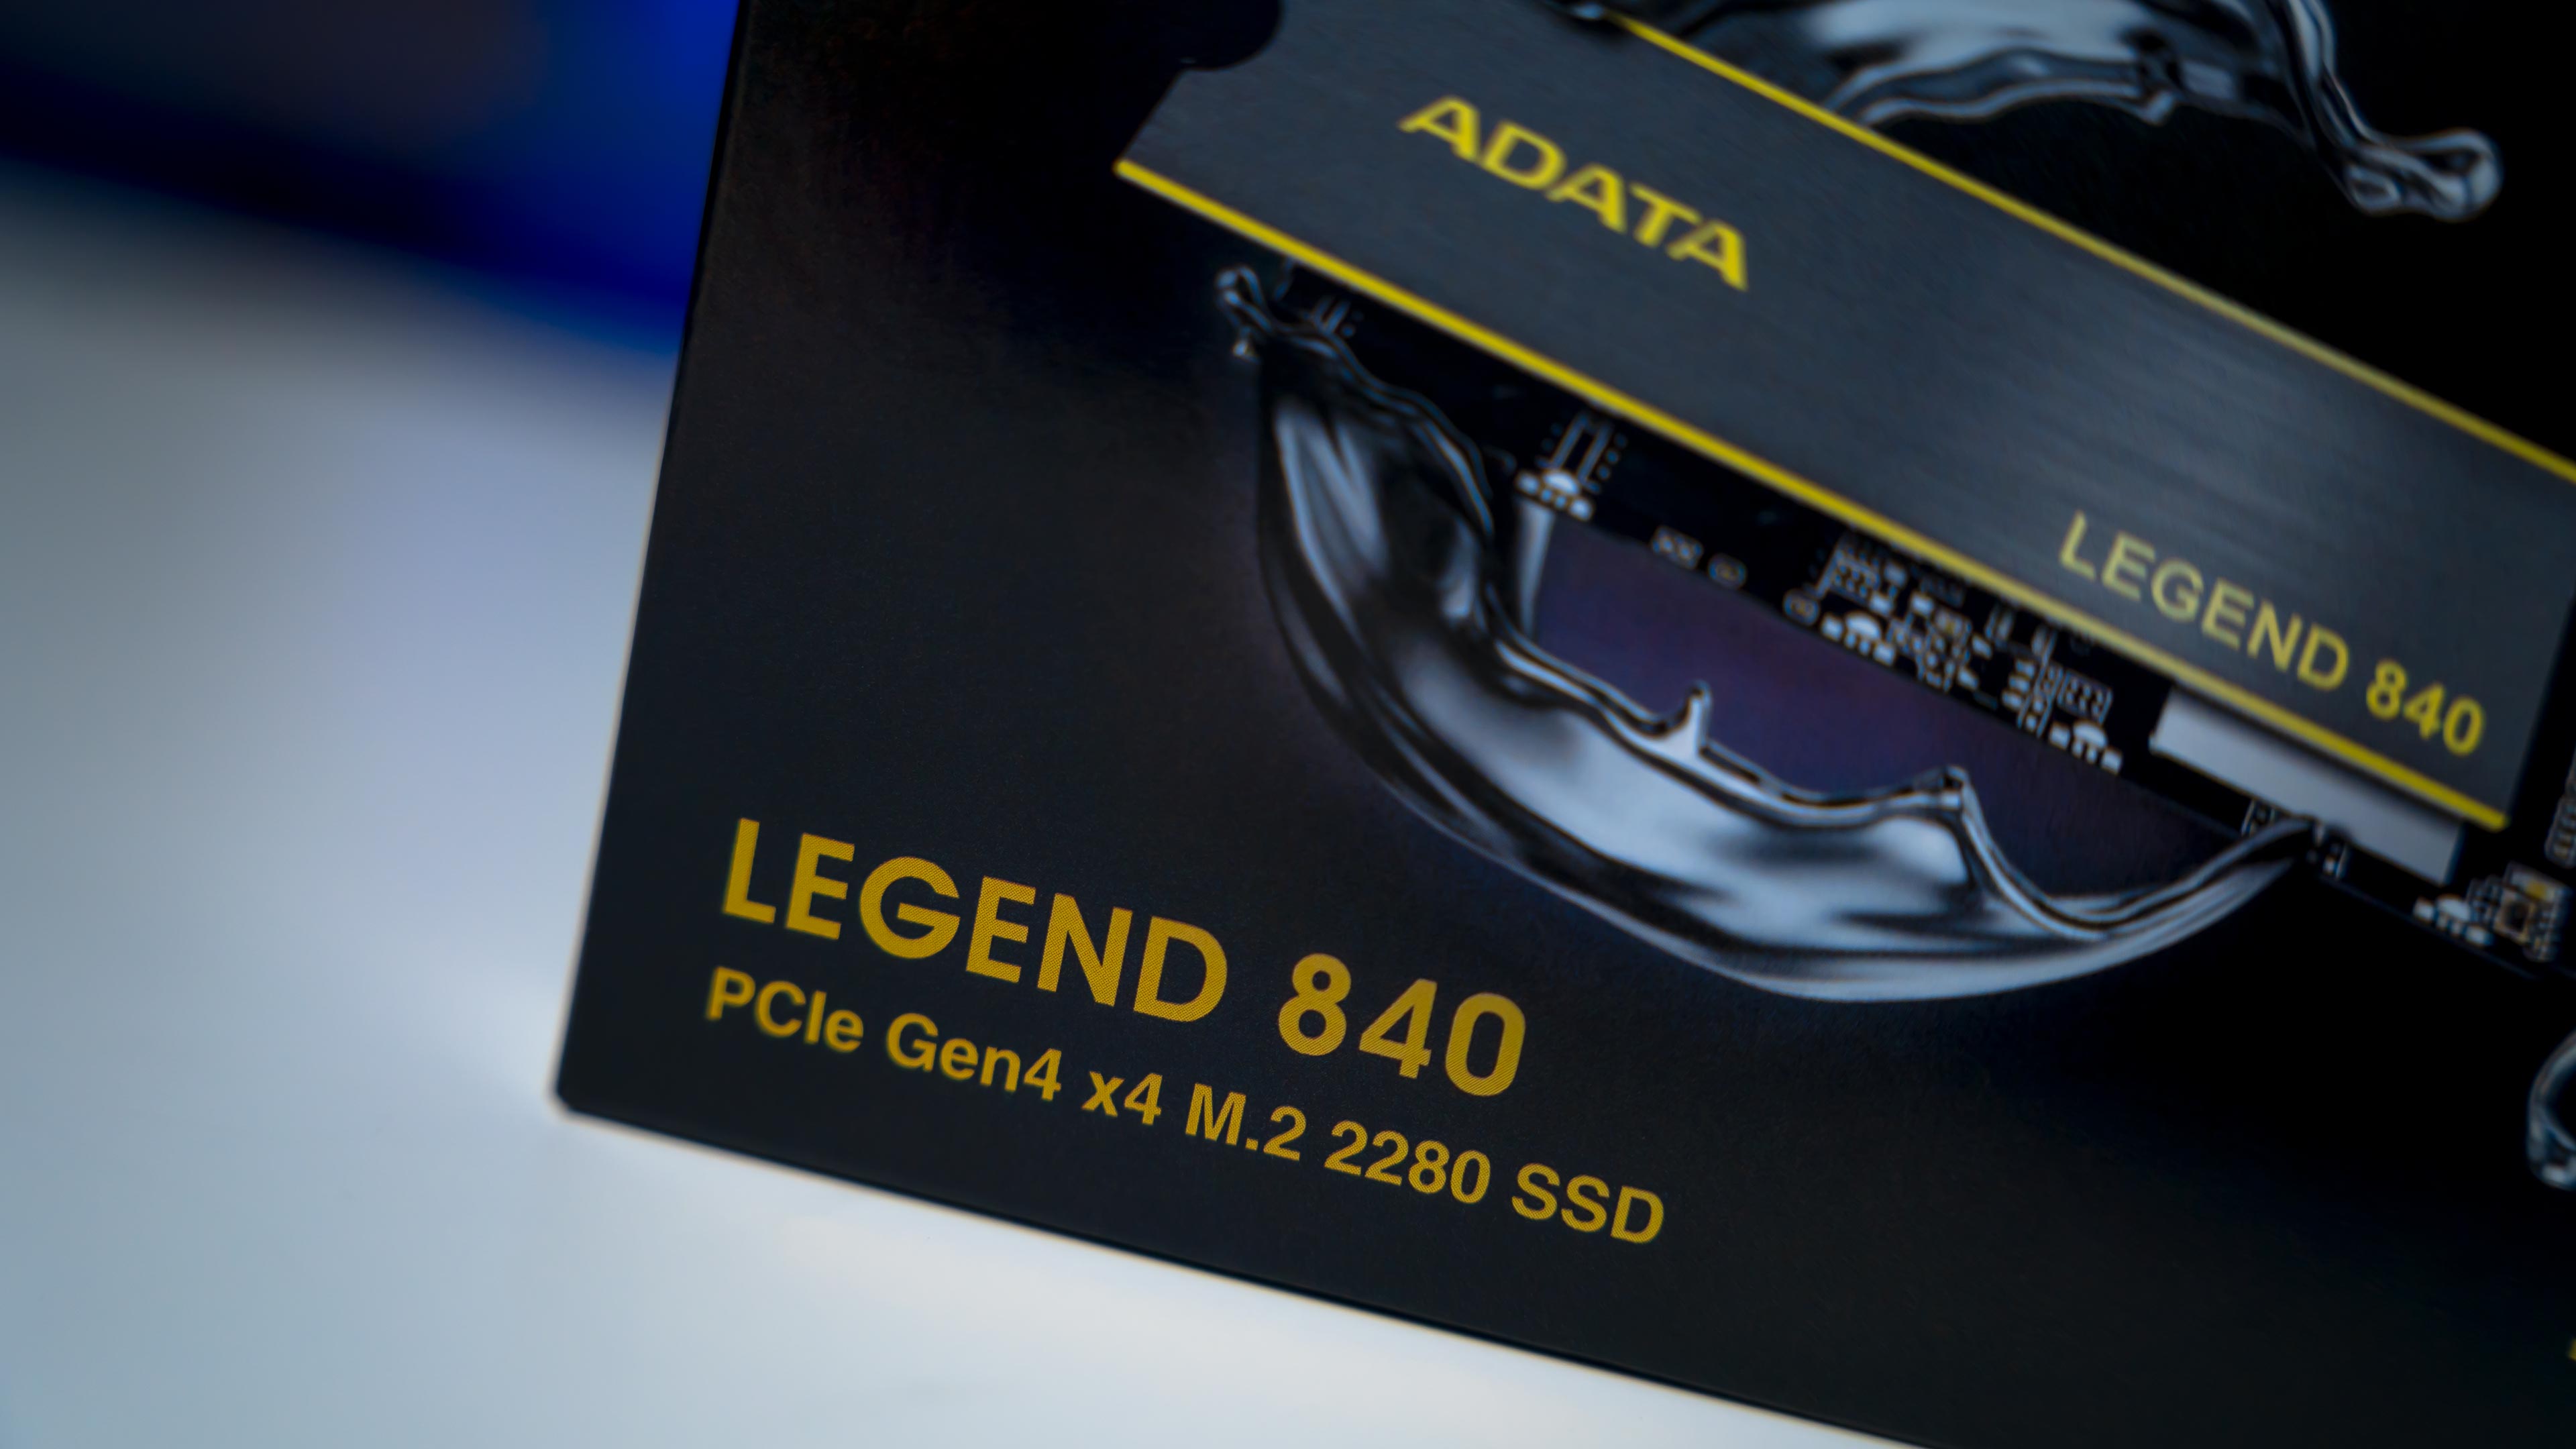 ADATA Legend 840 Box (2)